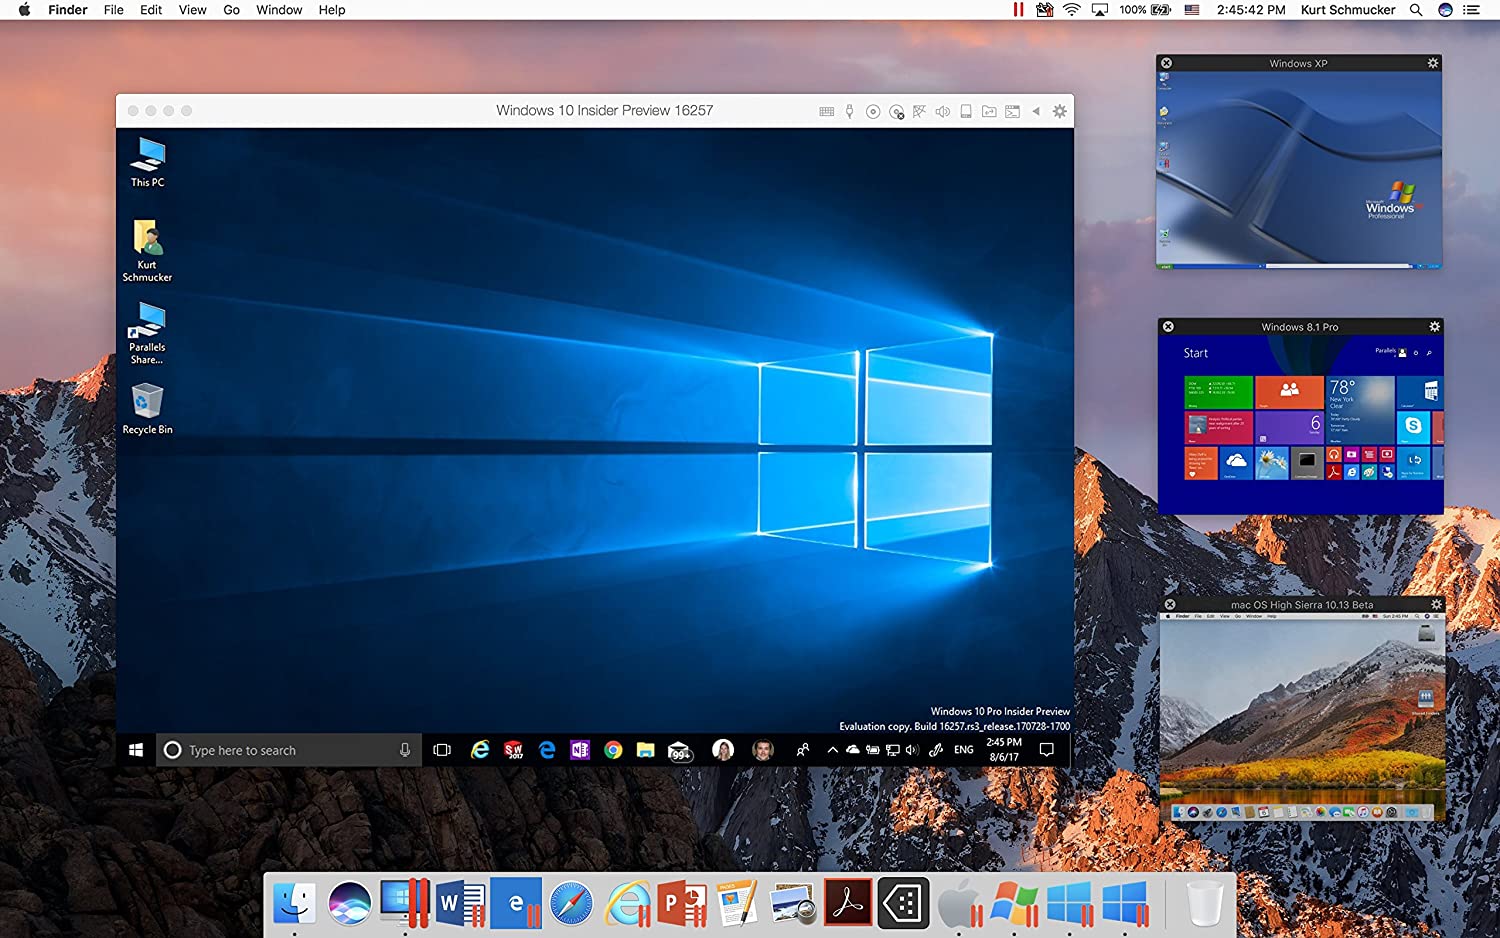 parallels desktop xp for mac